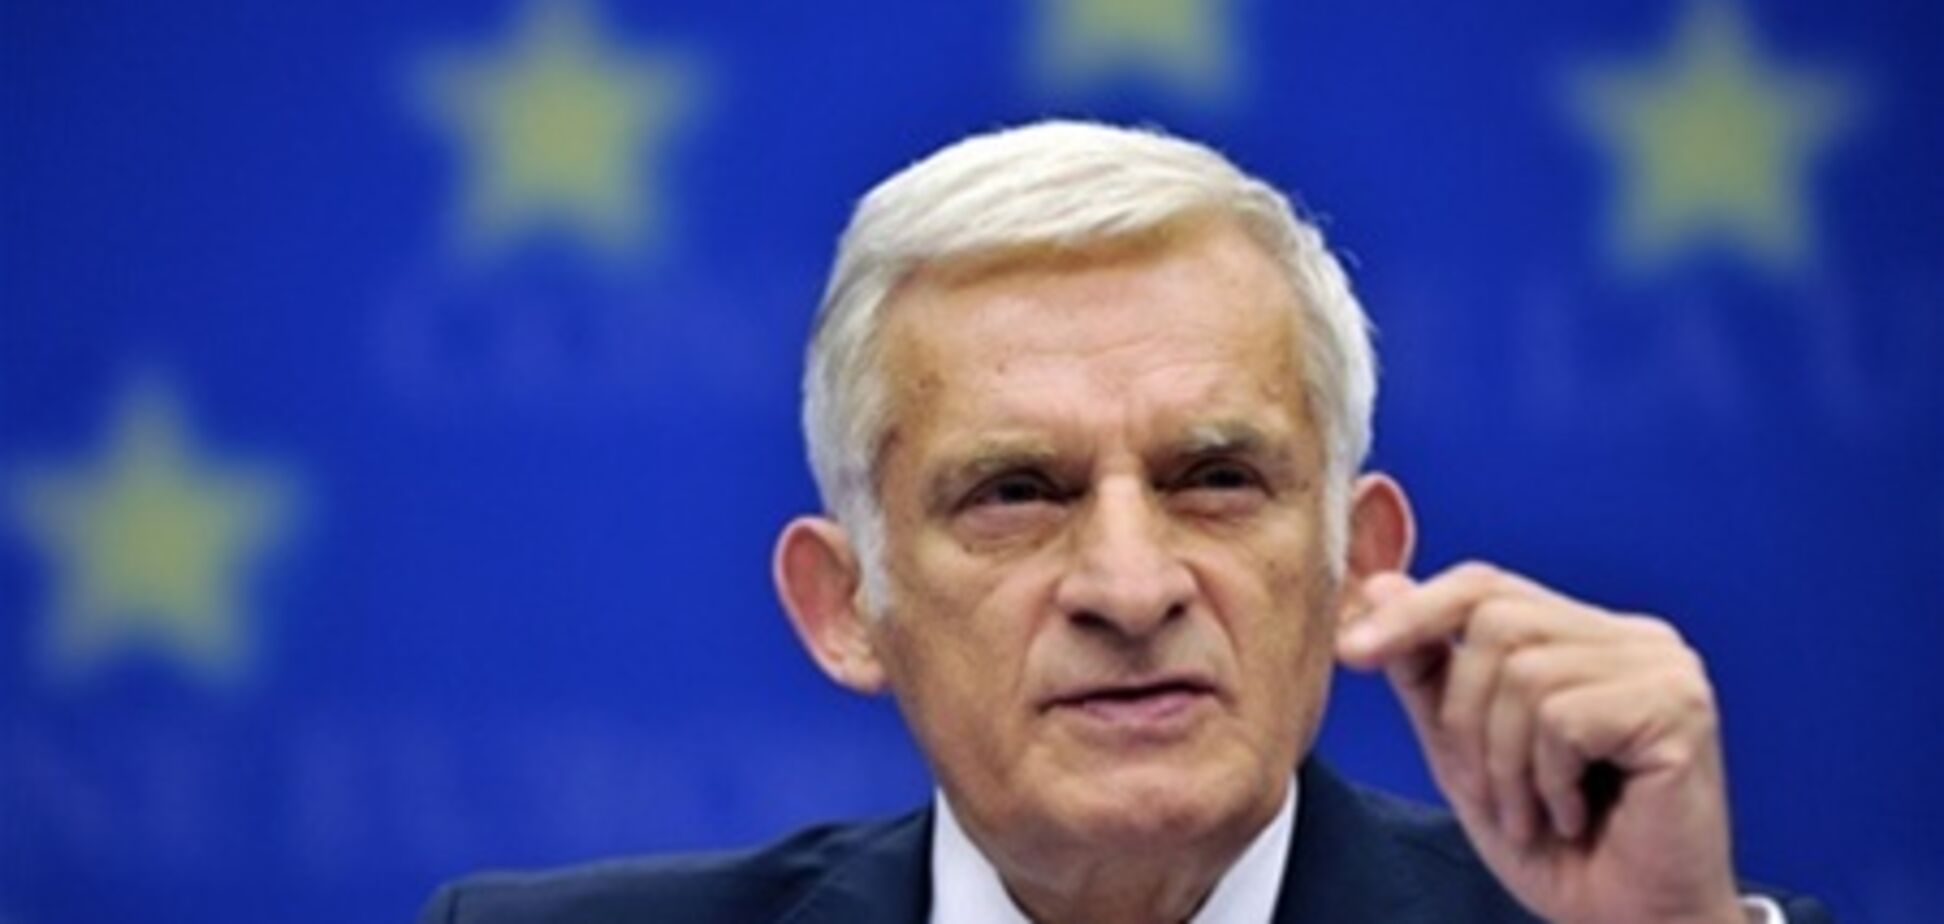 ЕС пока не планирует санкций против украинских чиновников - Бузек